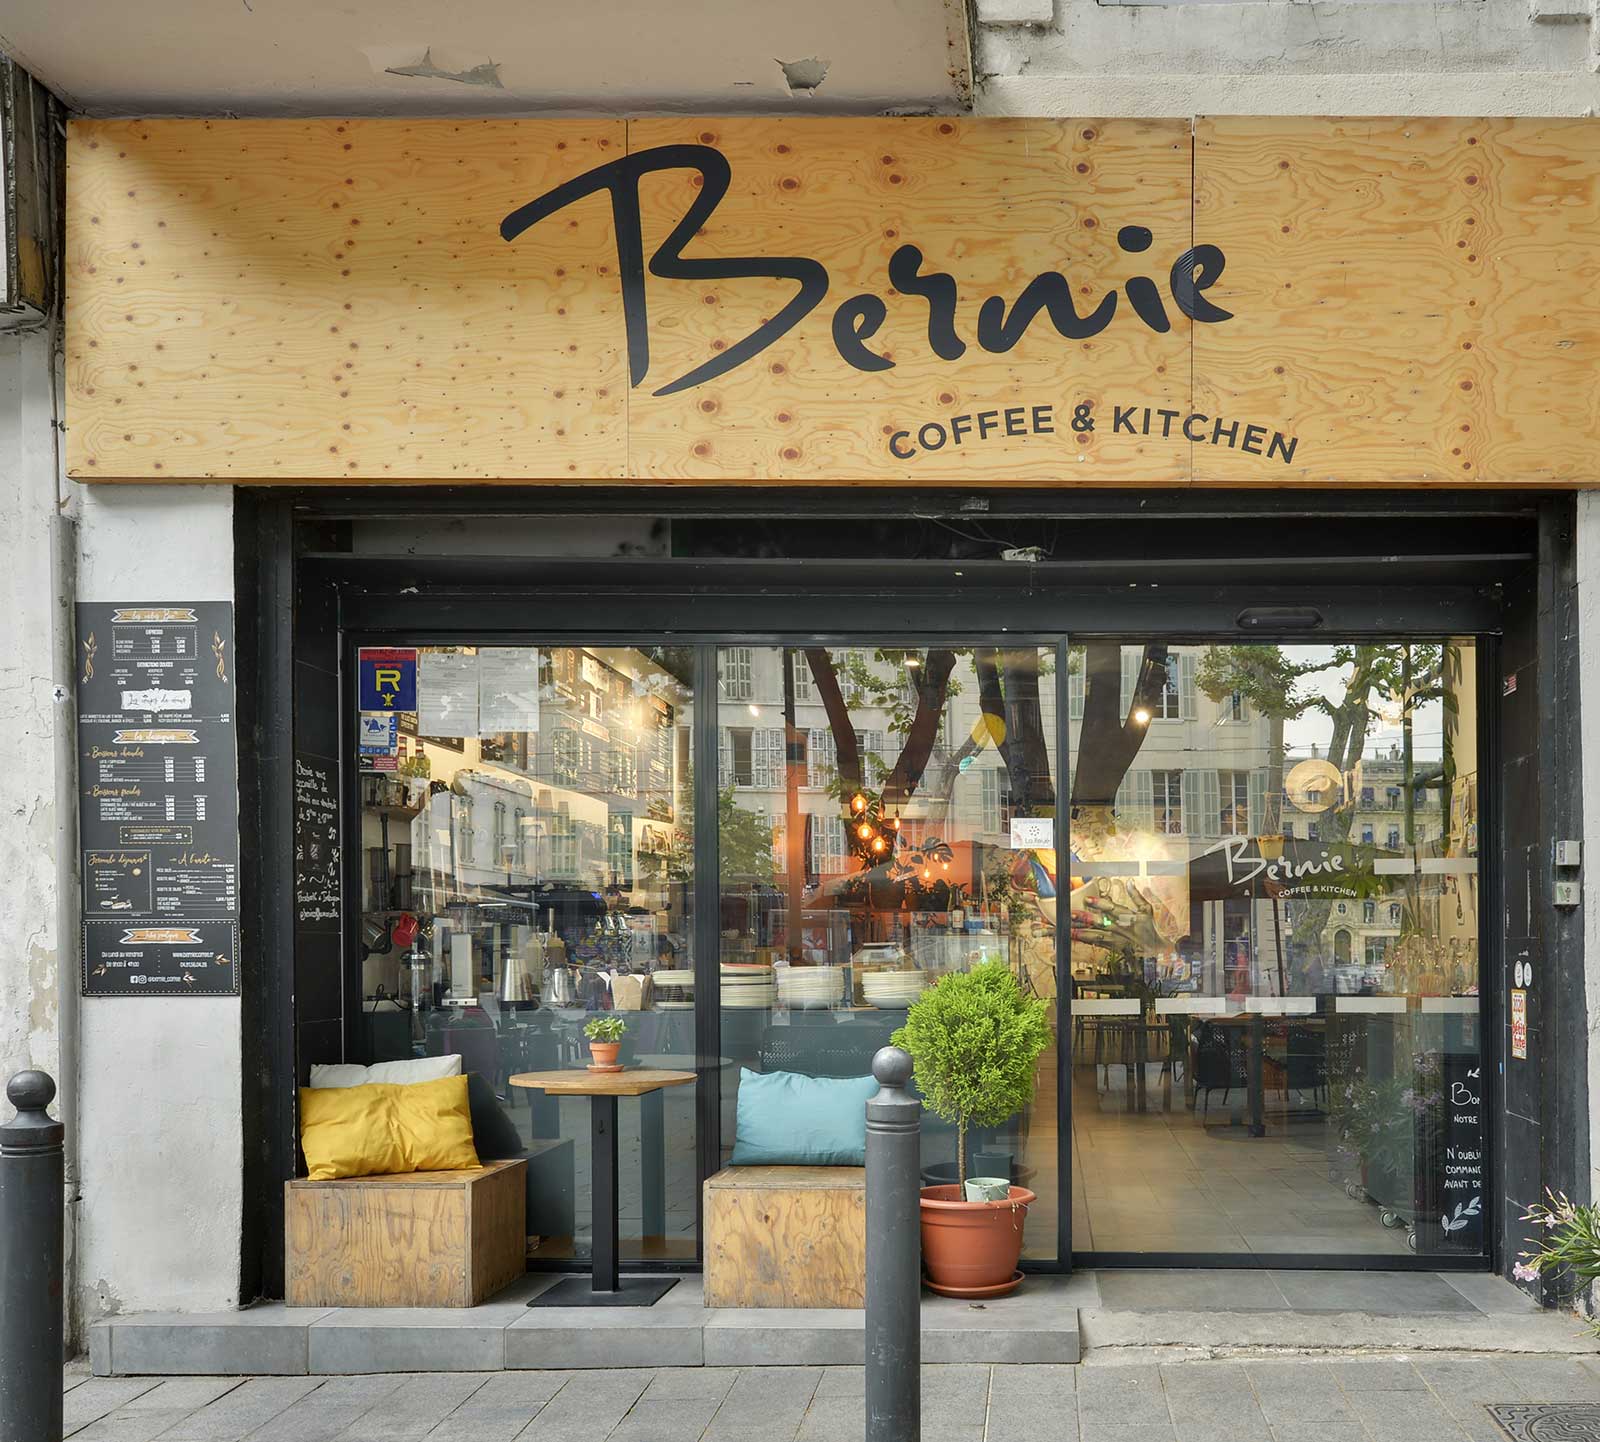 Voici la devanture de notre restaurant végétarien Bernie Coffee installé sur la place de Rome dans le 13006 à Marseille.